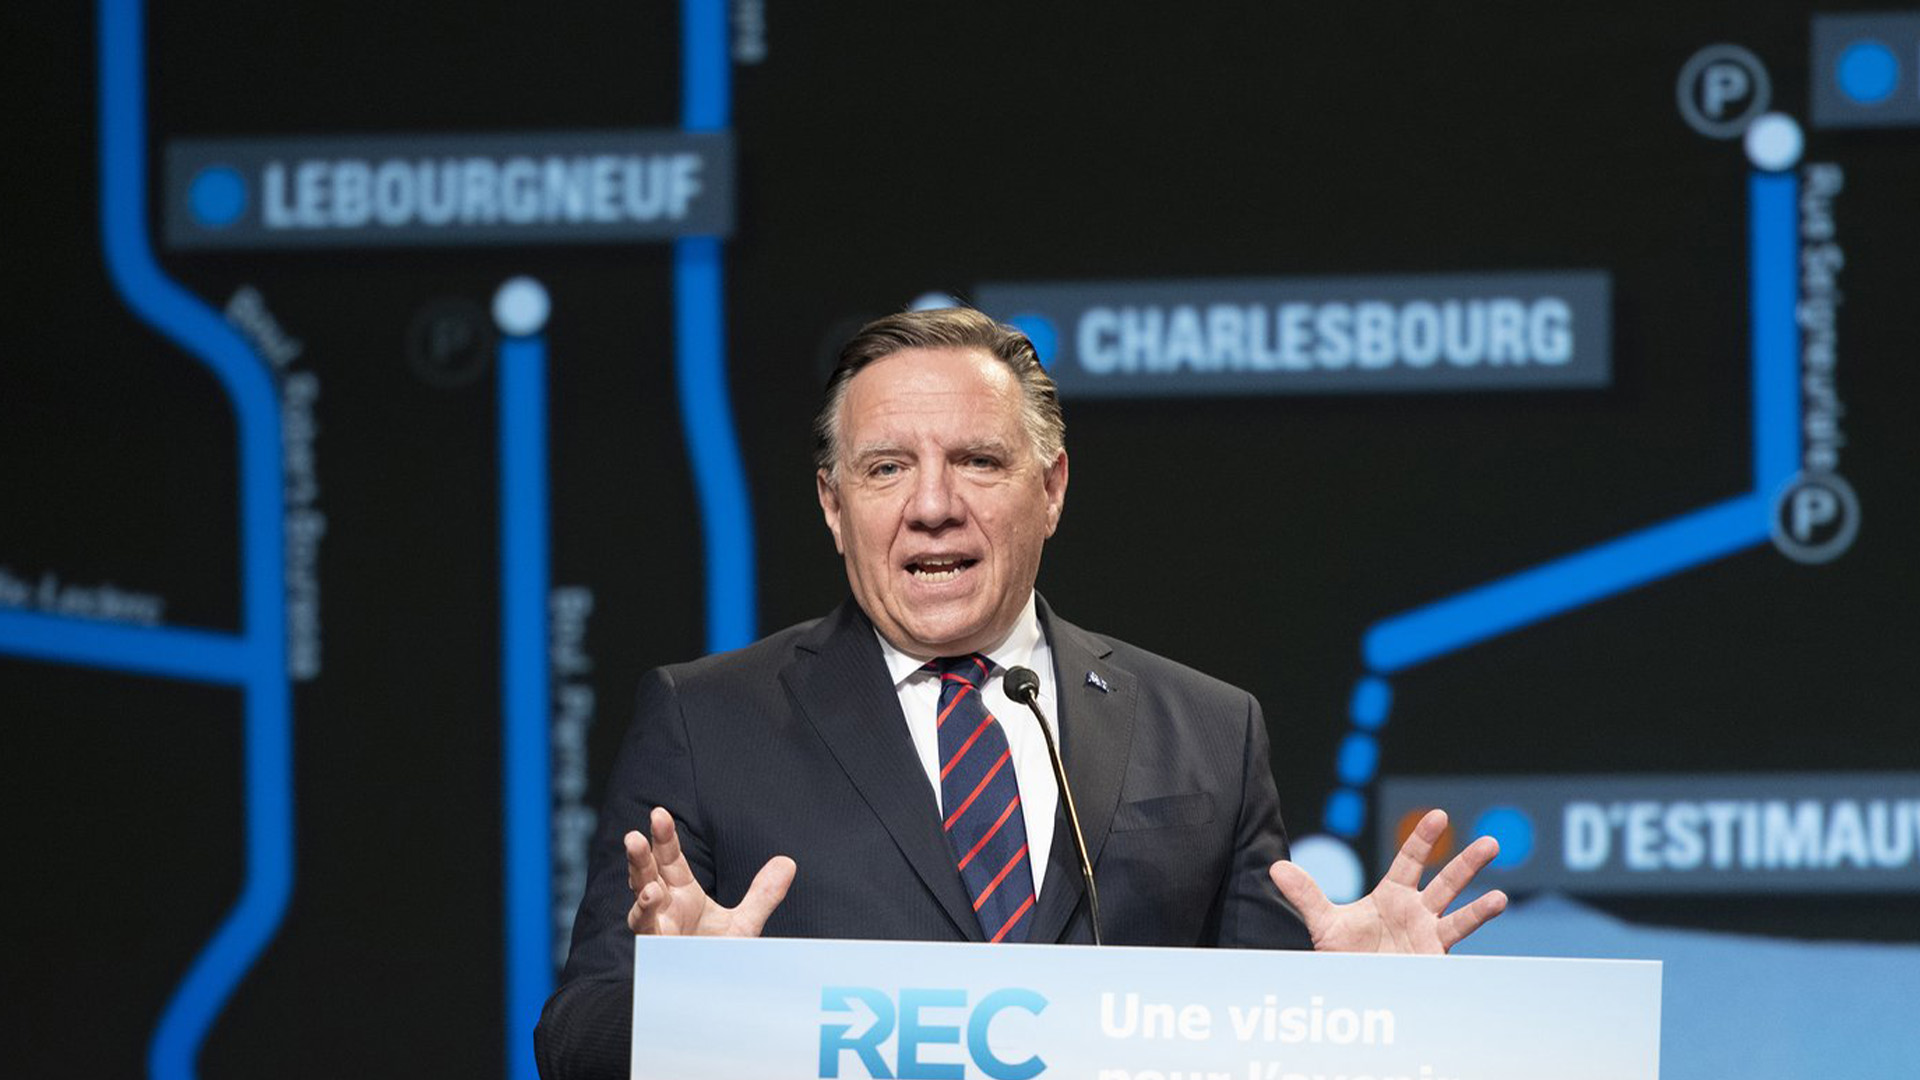 Le premier ministre du Québec, François Legault, annonce le nouveau réseau de transport en commun, comprenant un tramway et un tunnel pour relier Lévis à Québec, le lundi 17 mai 2021 à Québec.